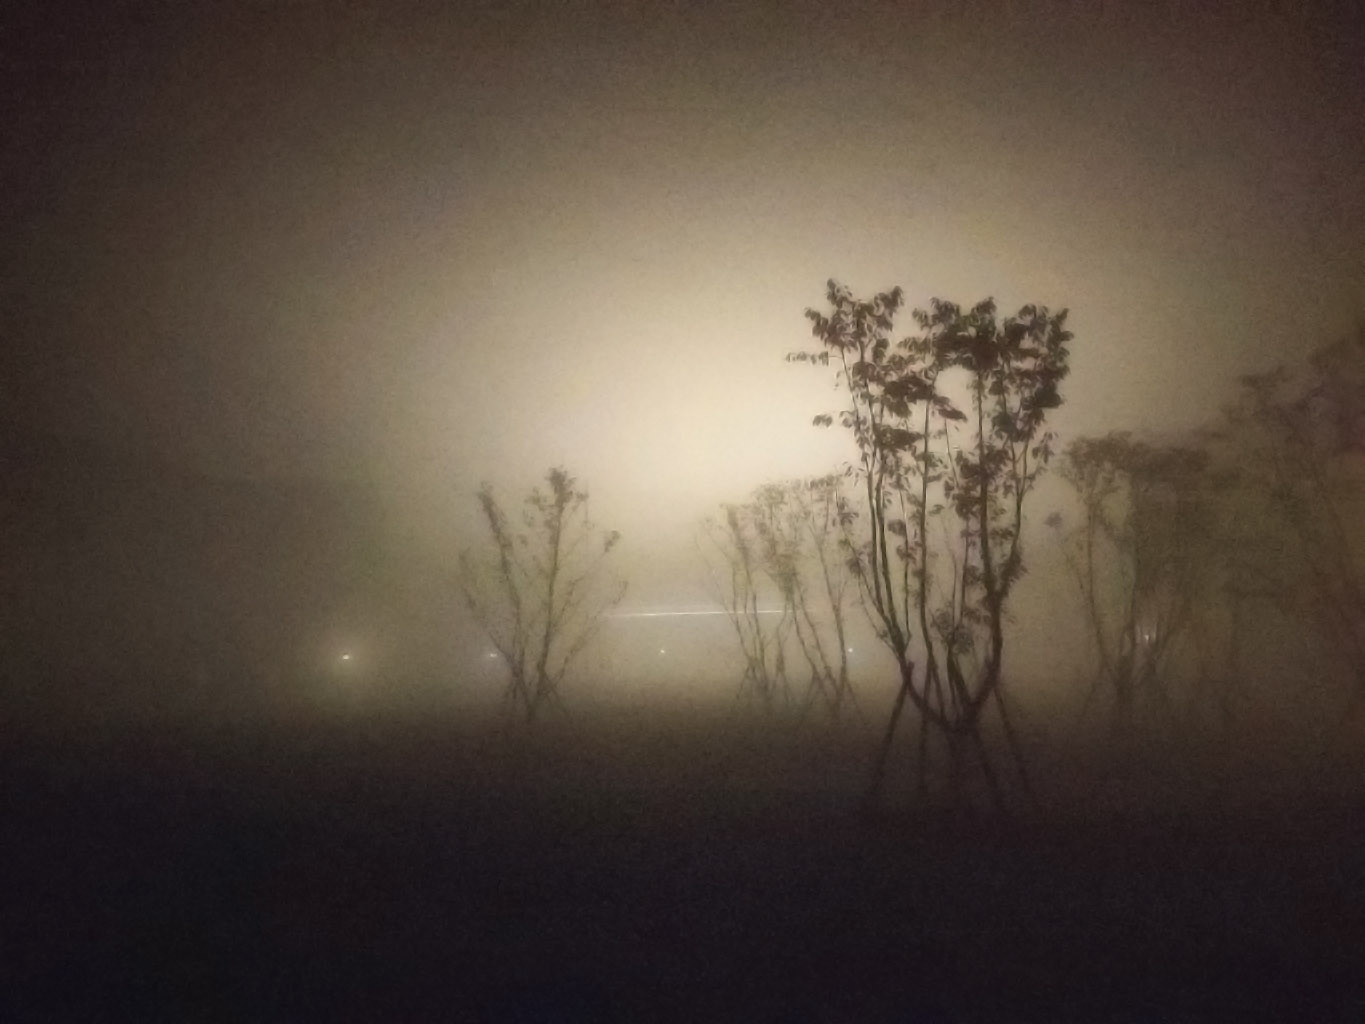 20181130 Mist at Zhejiang University